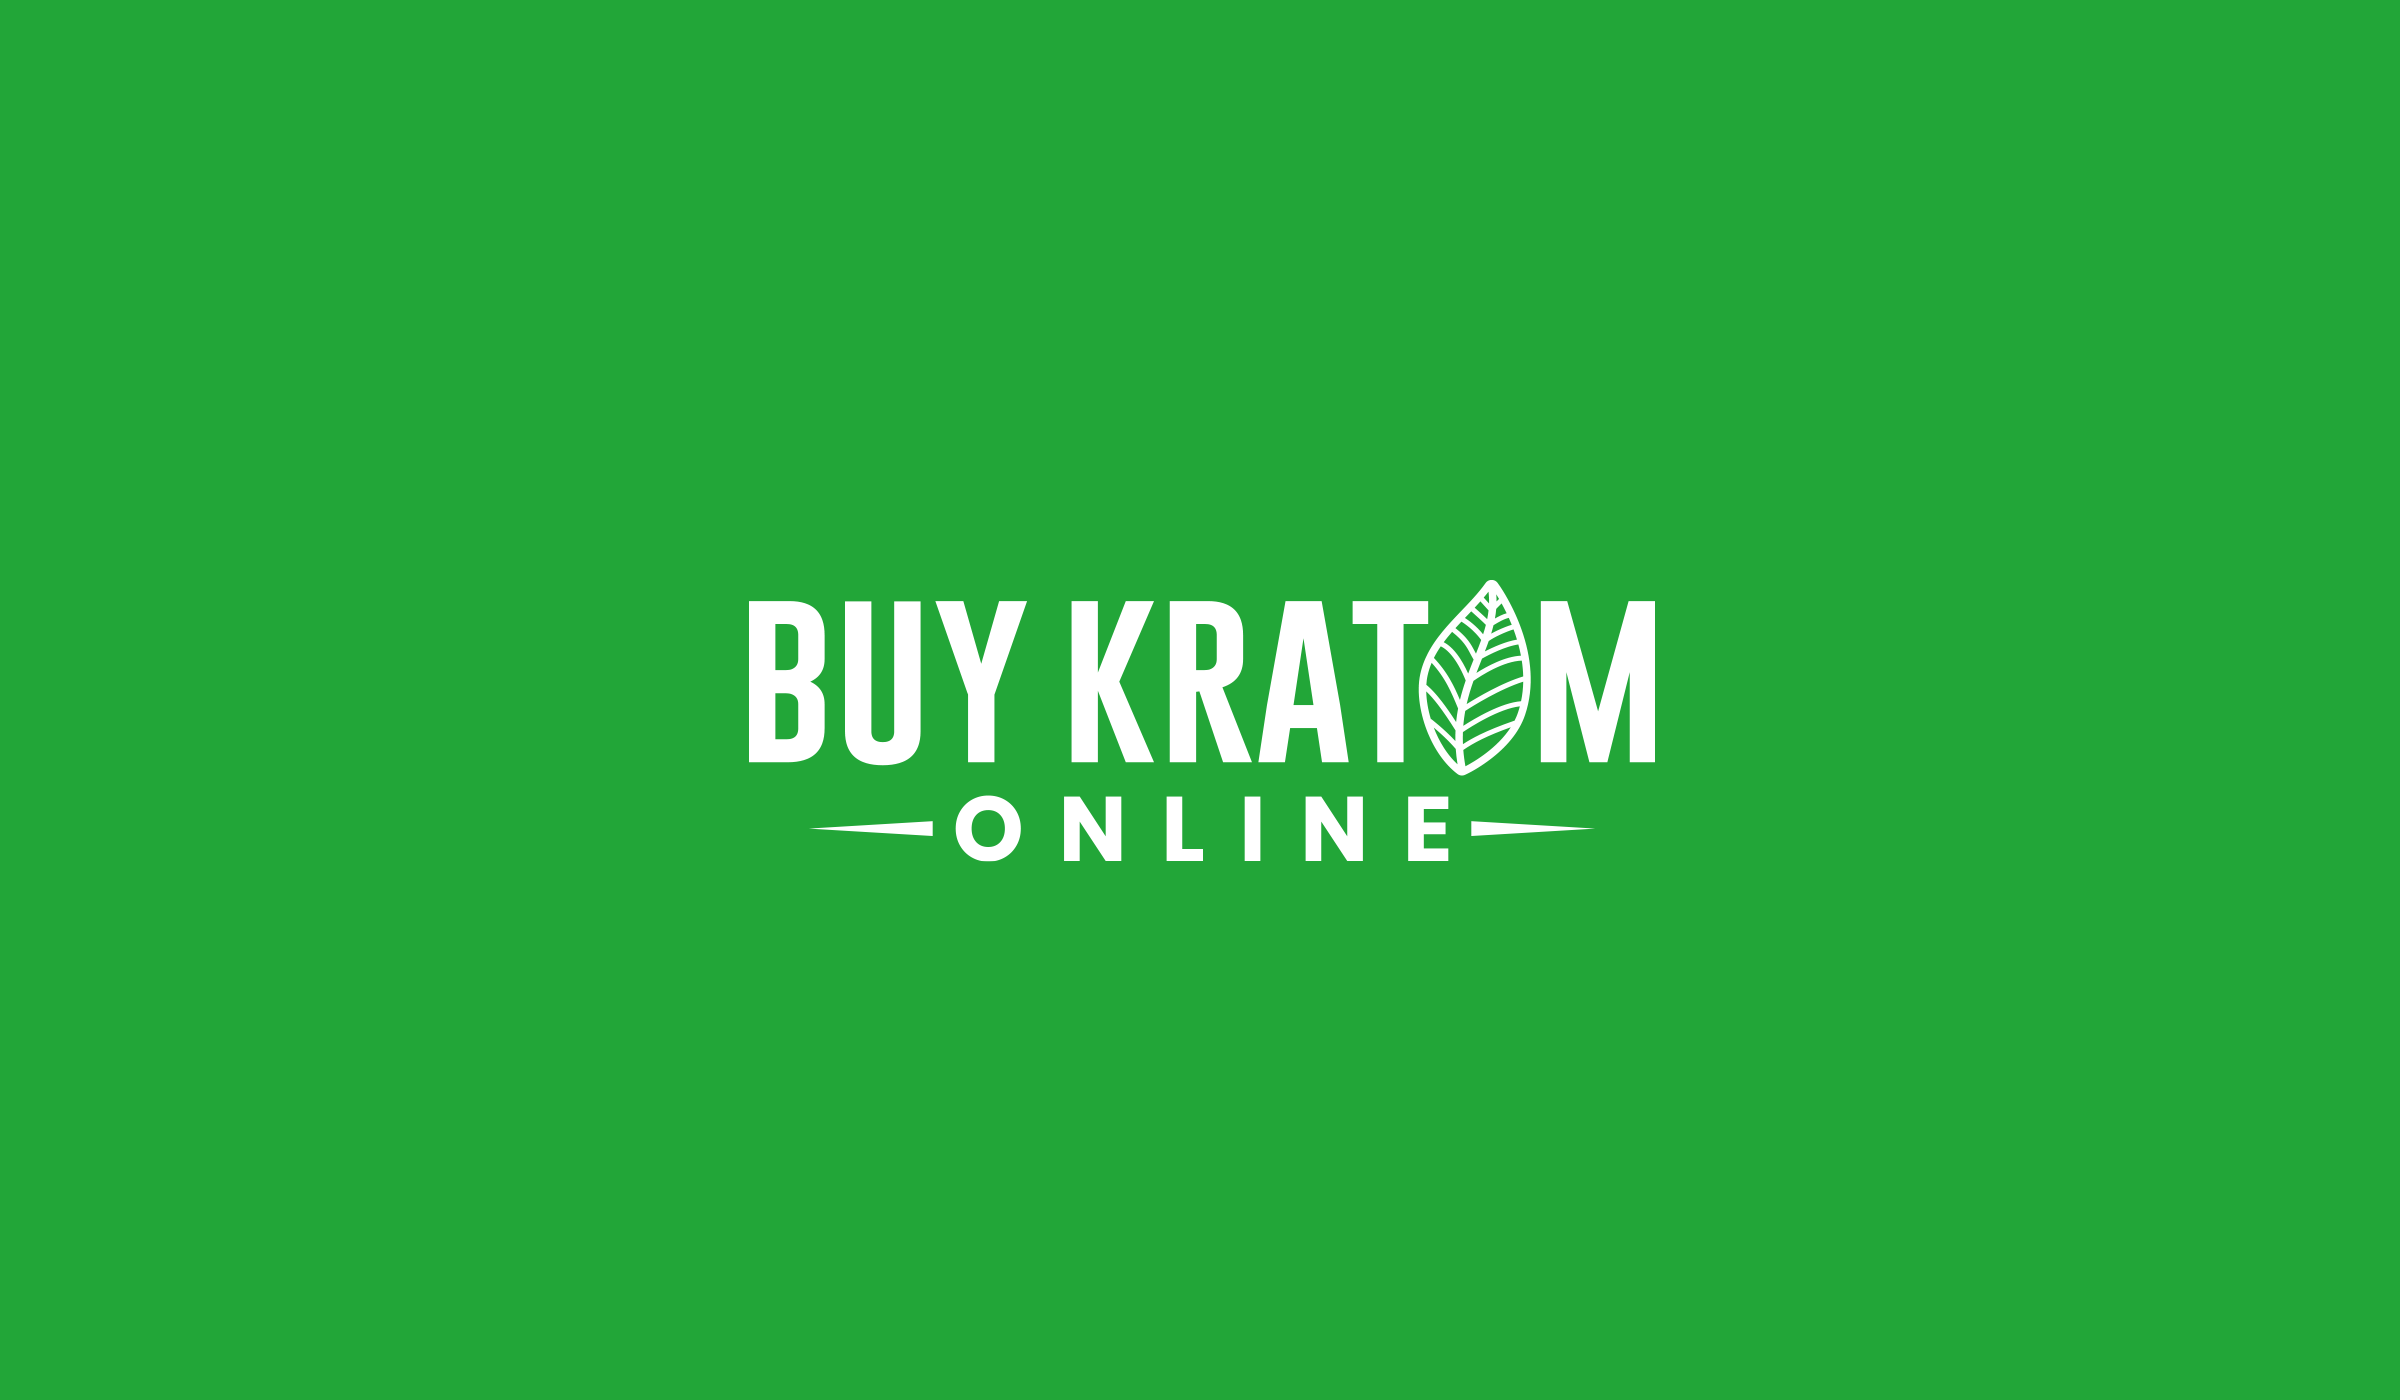 buykratomonline.com